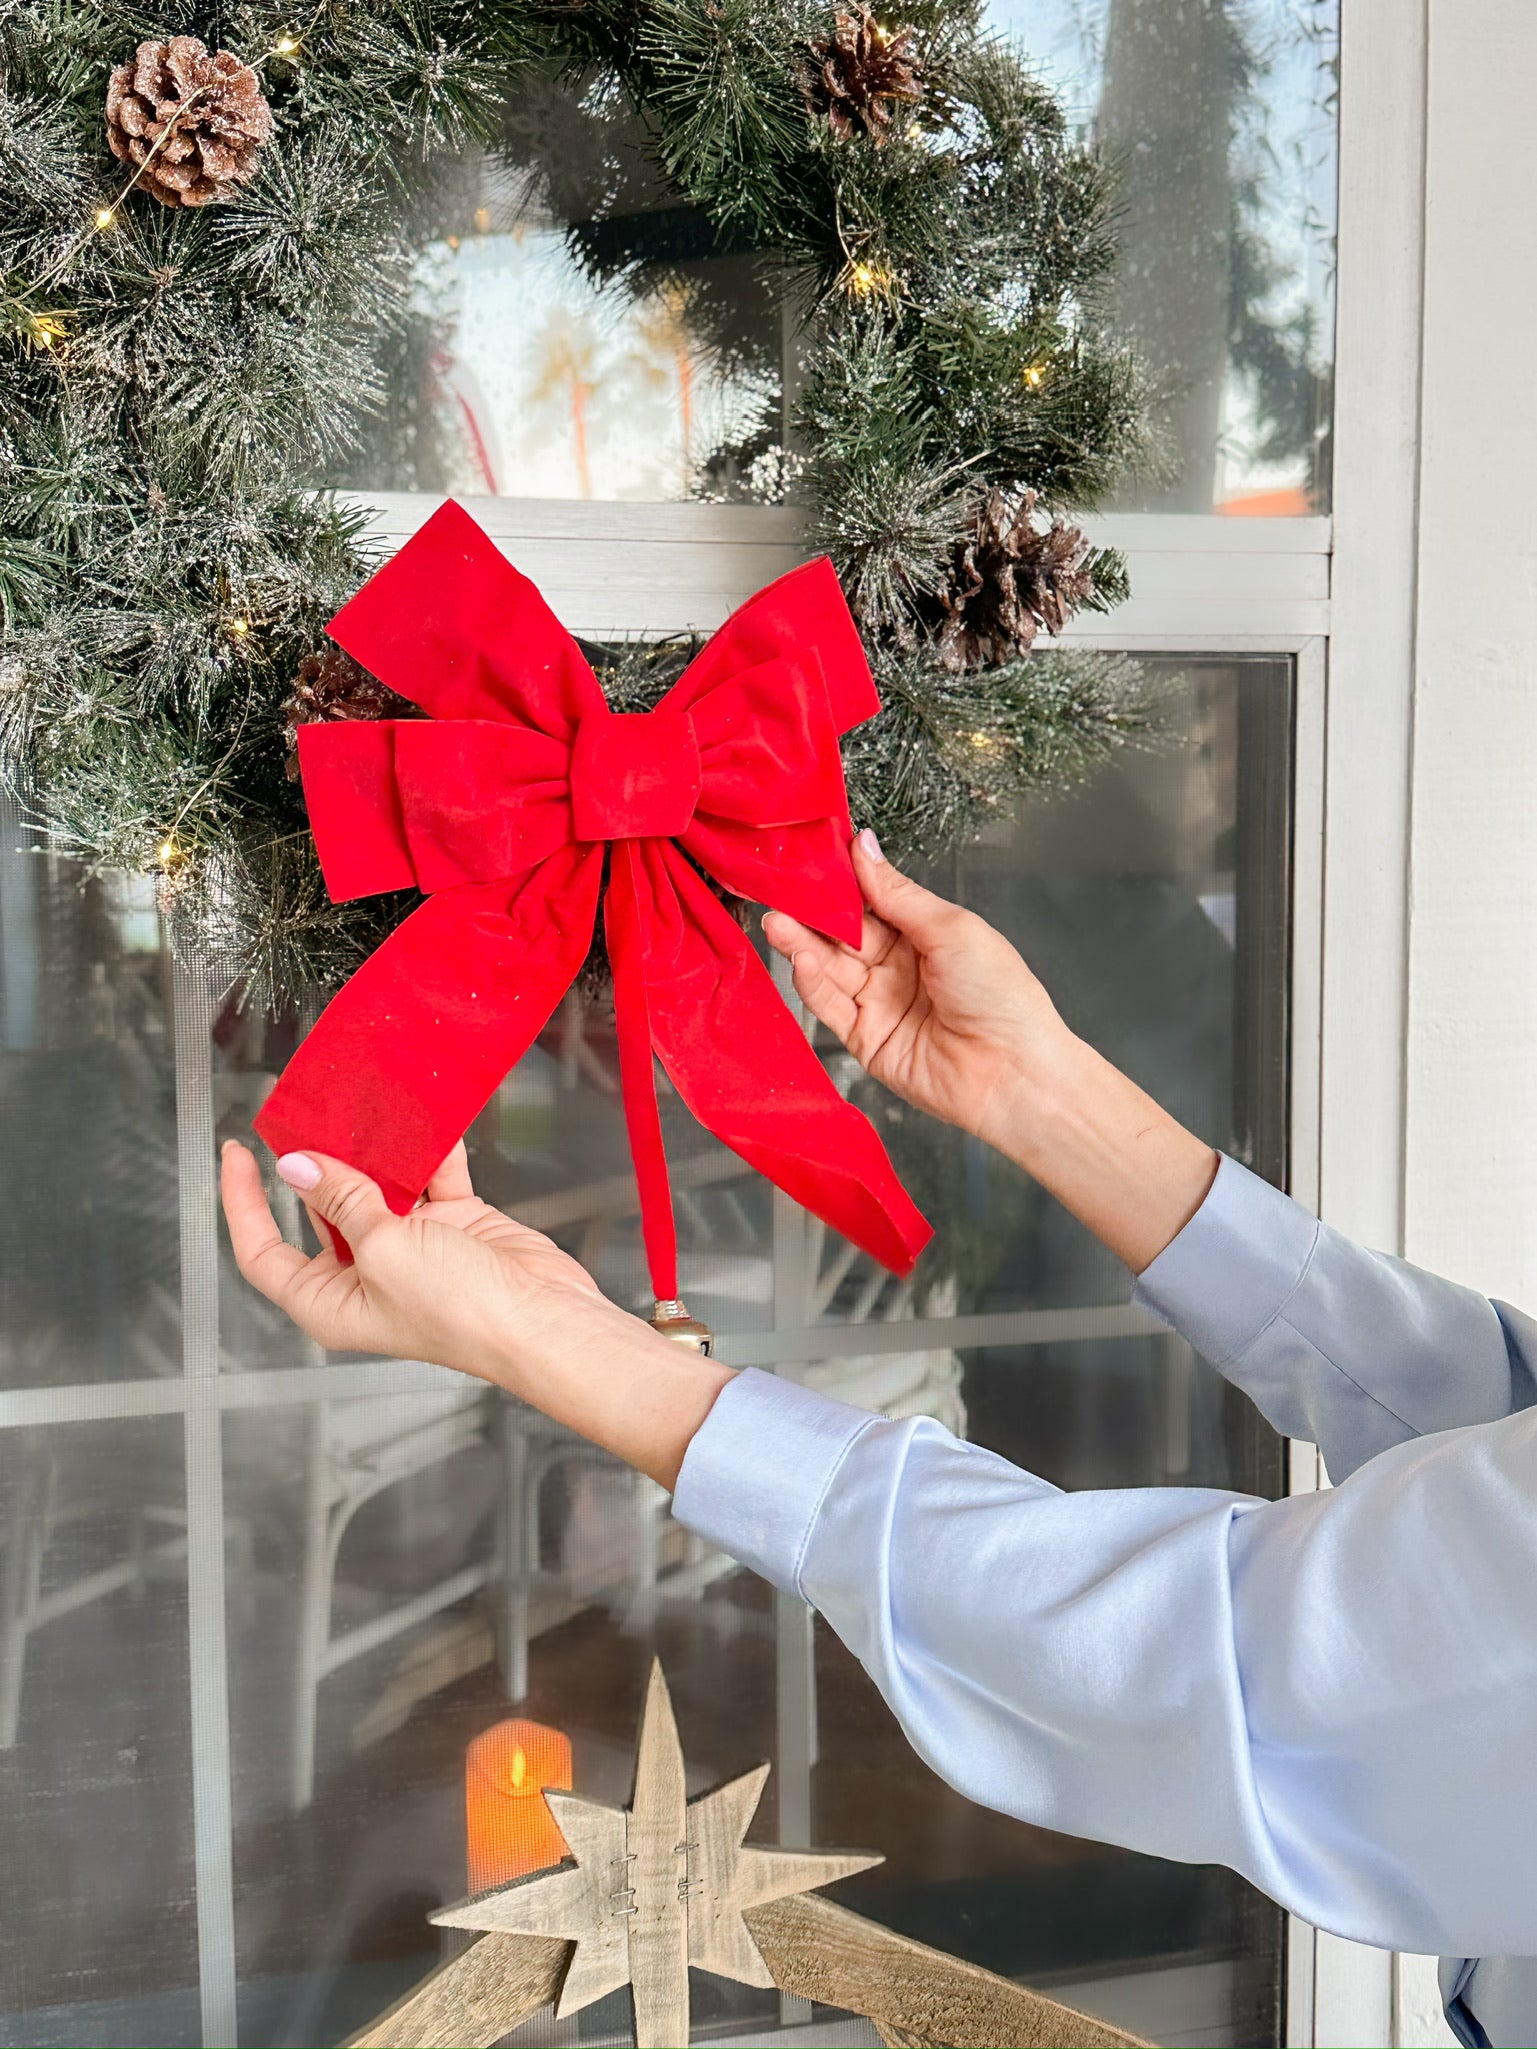 Placing a Bow on a Christmas Wreath